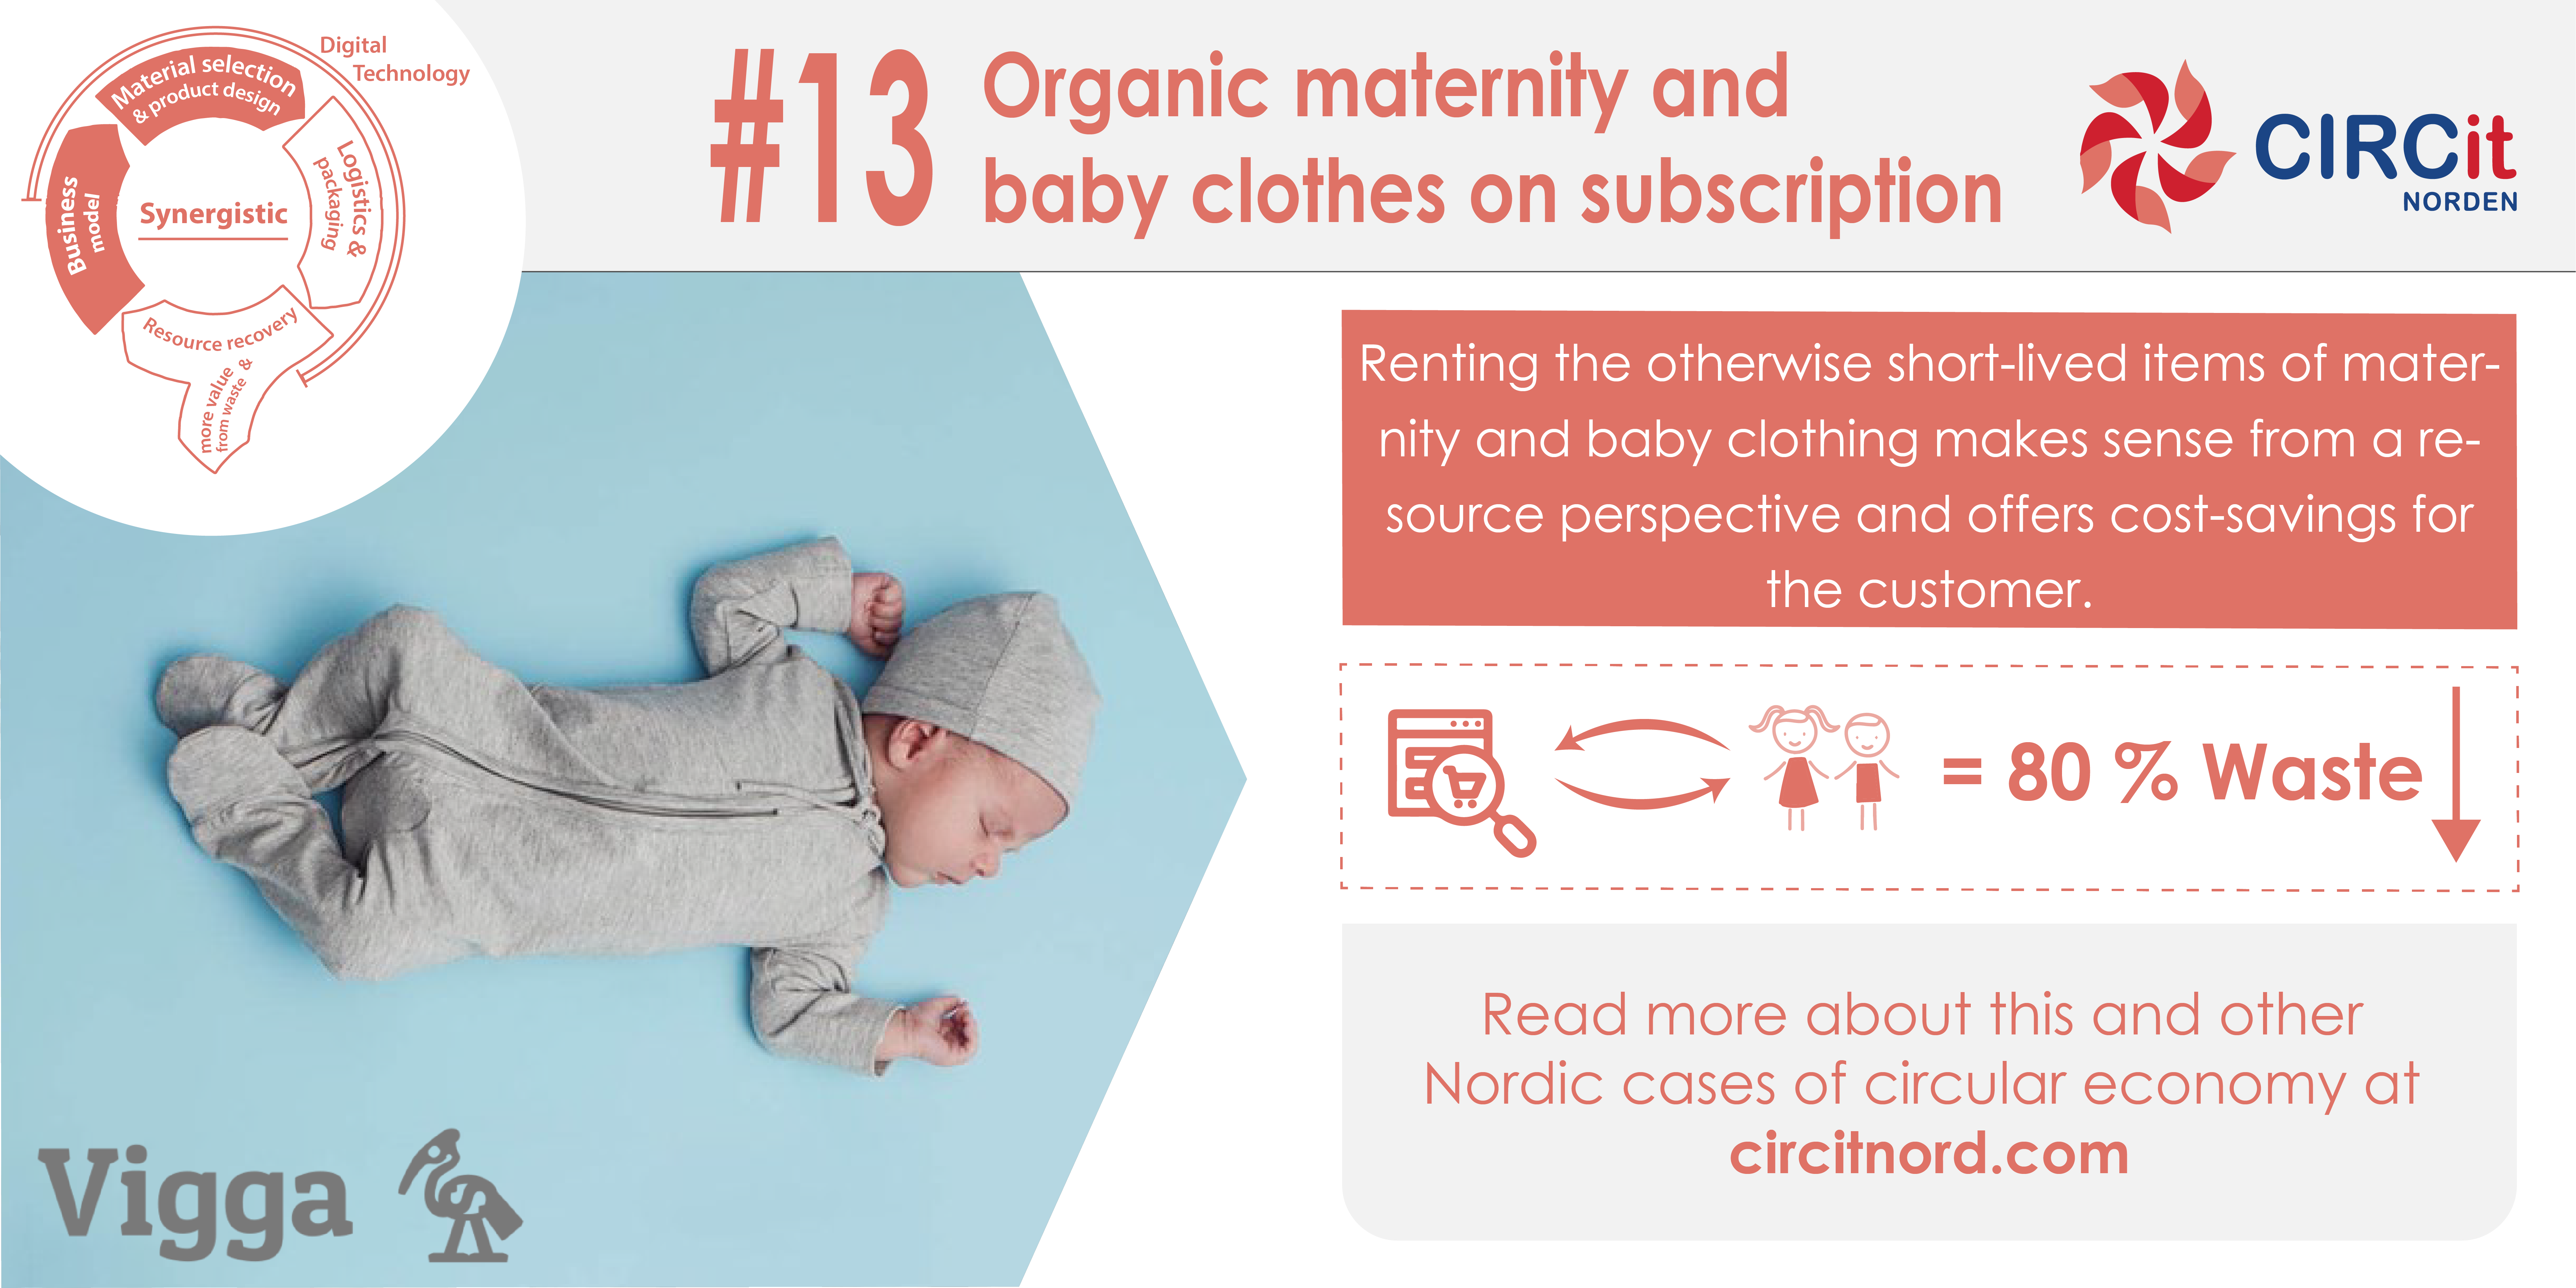 13 Vigga Organic and baby clothes subscription - CIRCit